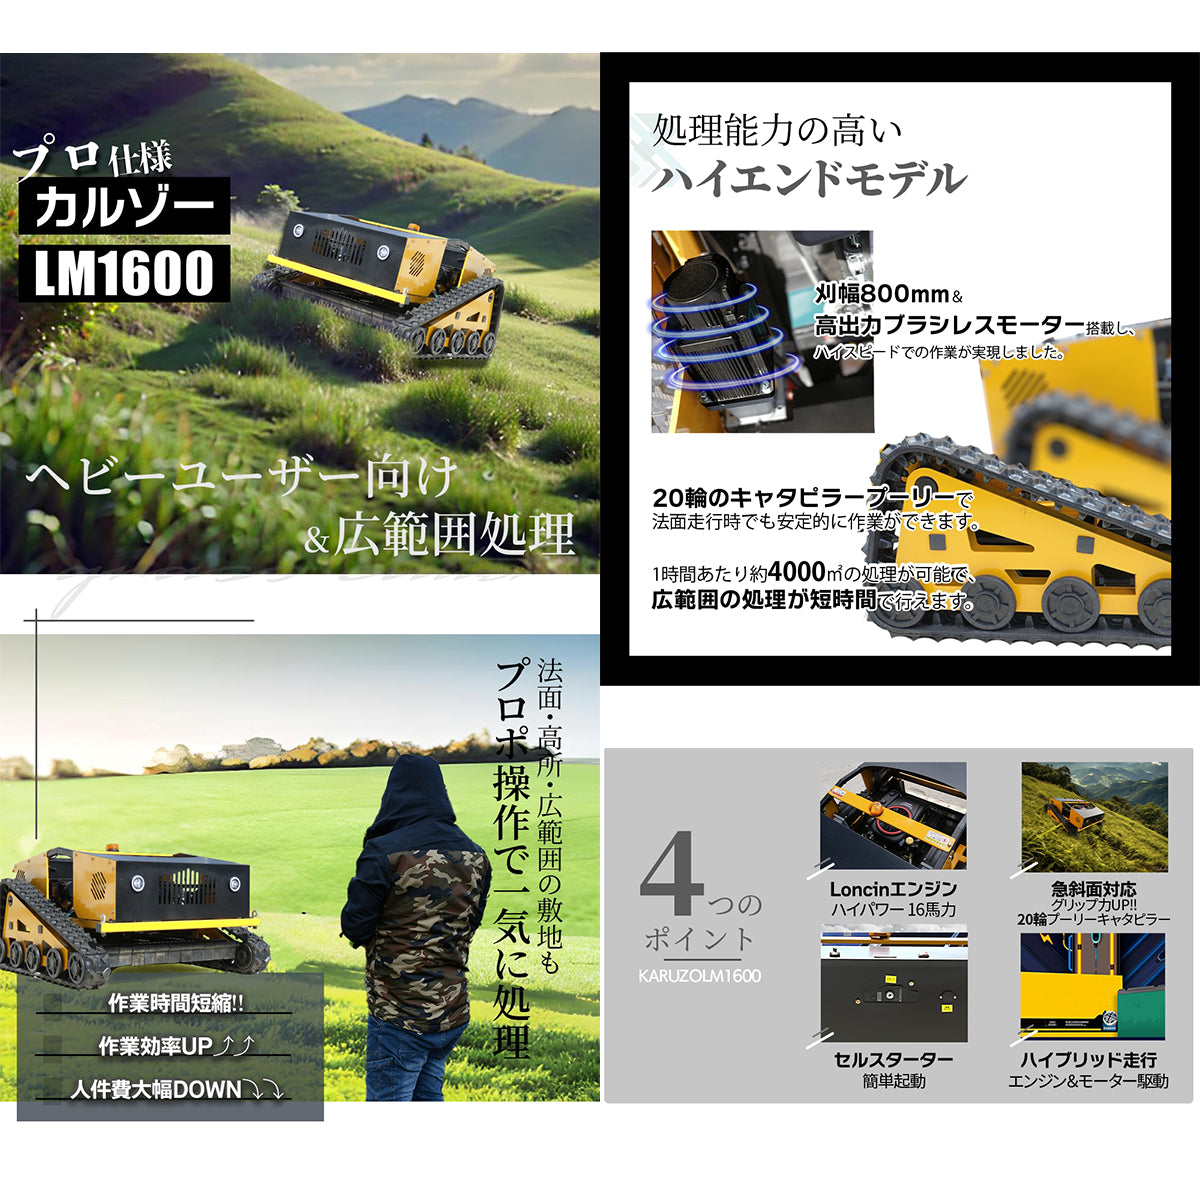 【4/19まで30%OFF】カルゾー LM1600 ラジコン草刈機